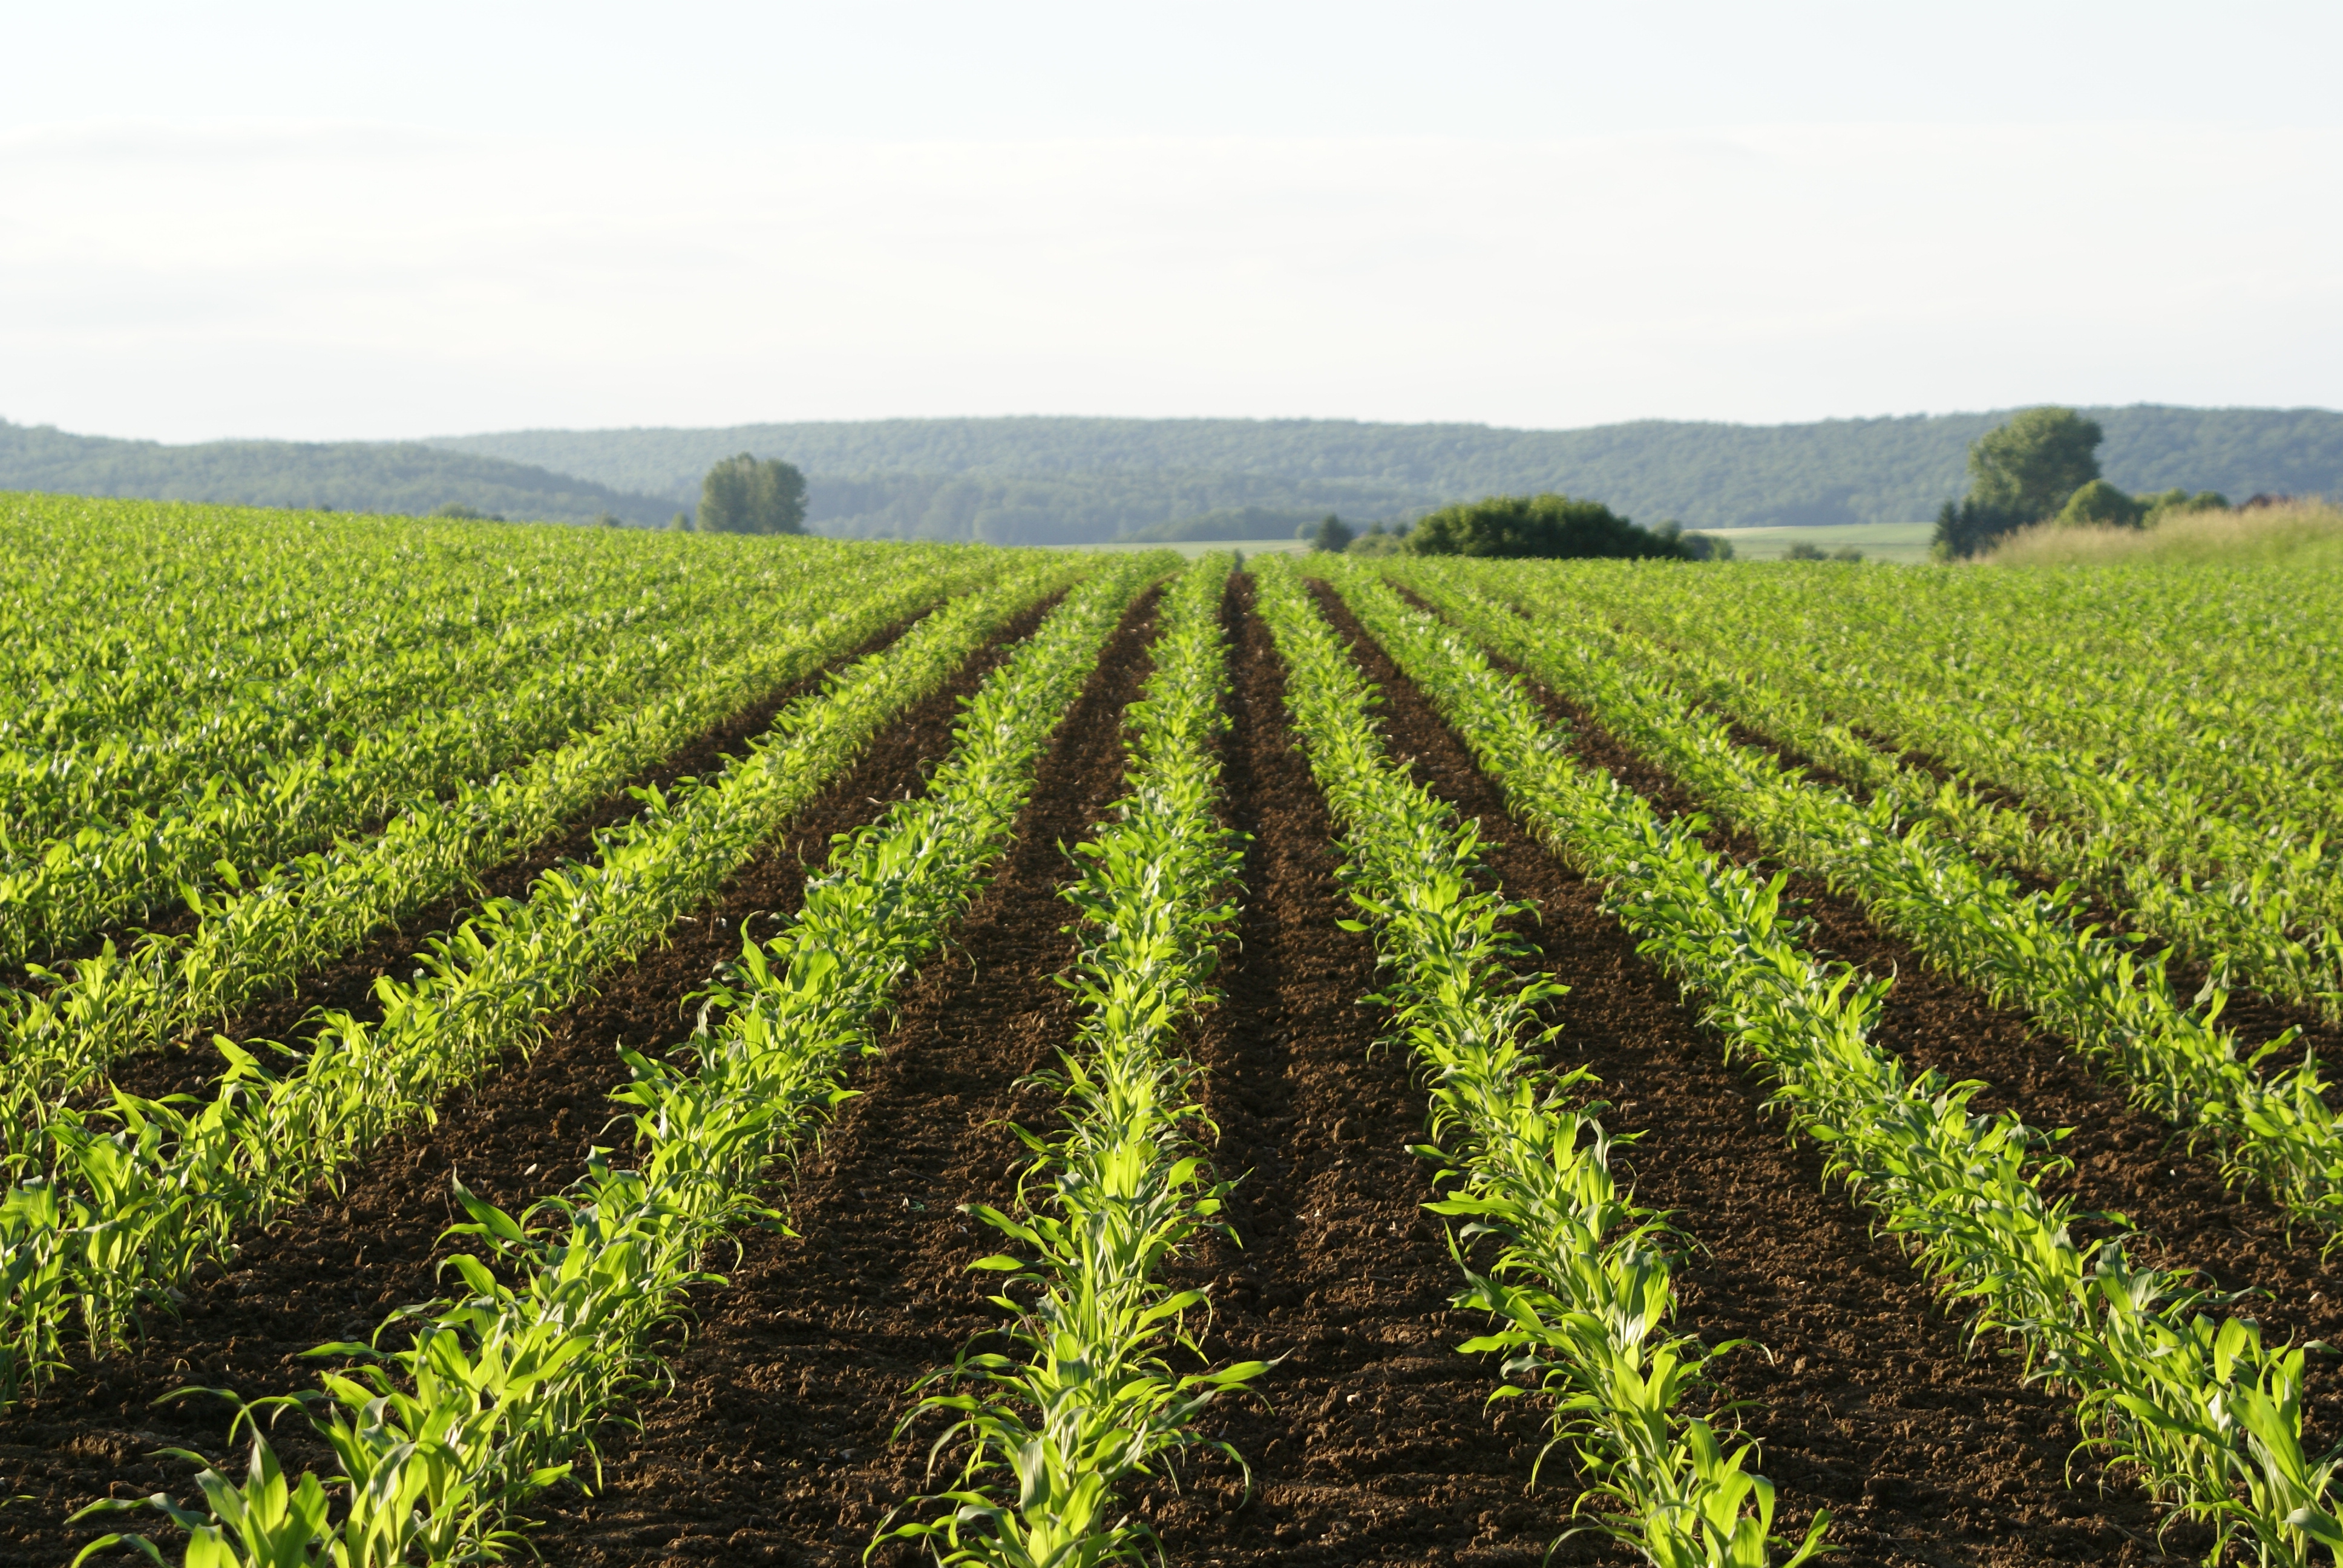 kws-cl-chile-corn-field-plants-in-rows.jpg